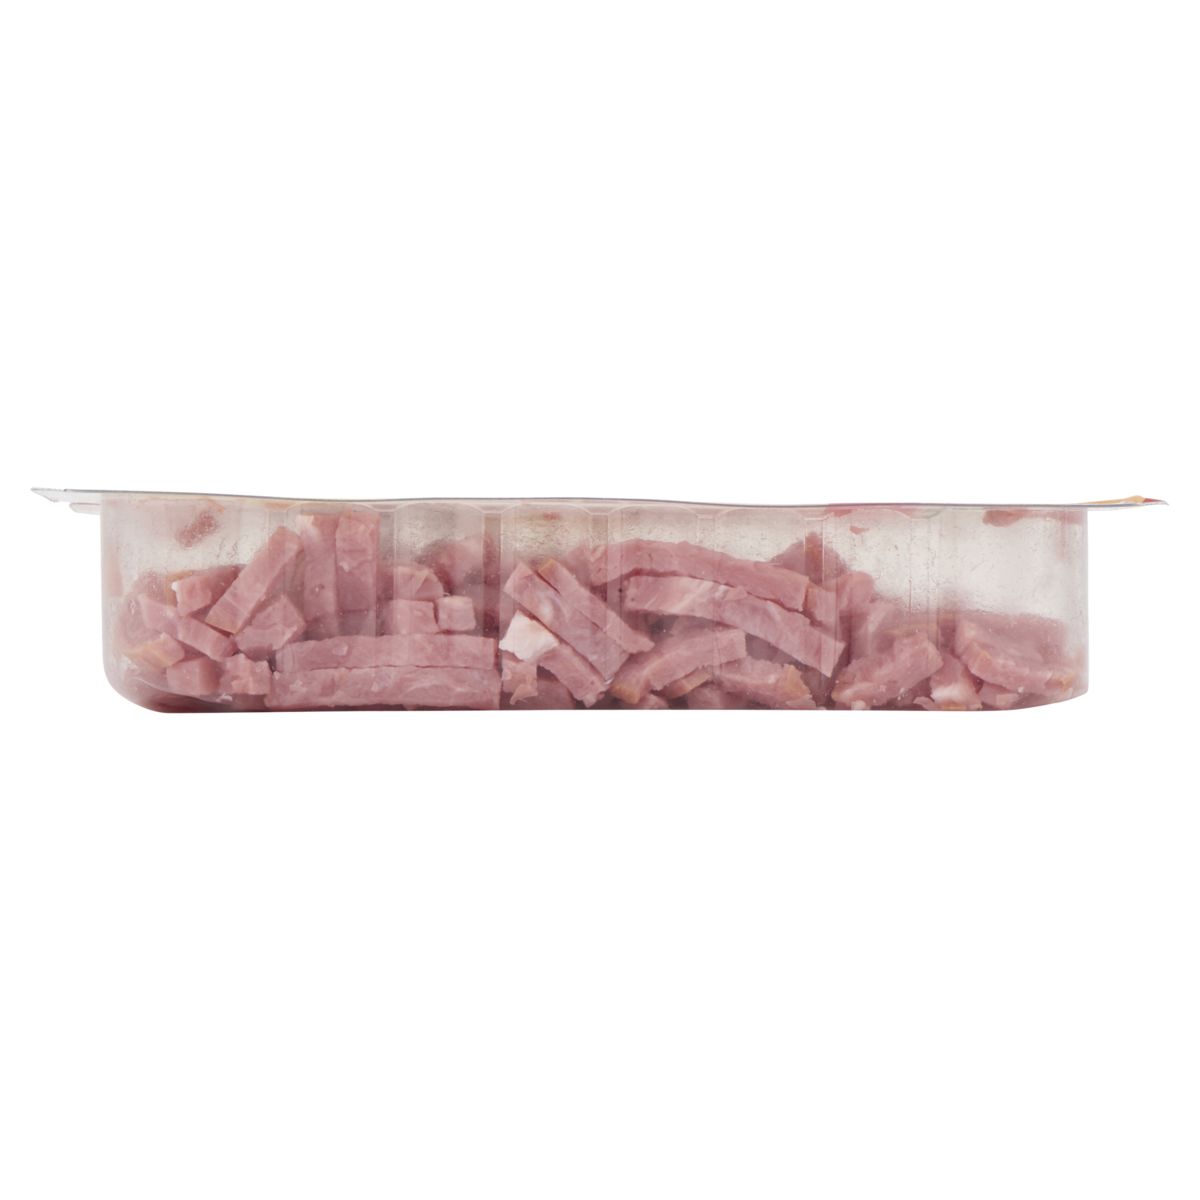 Herta Bacon Reepjes Gerookt 2 x 100 g